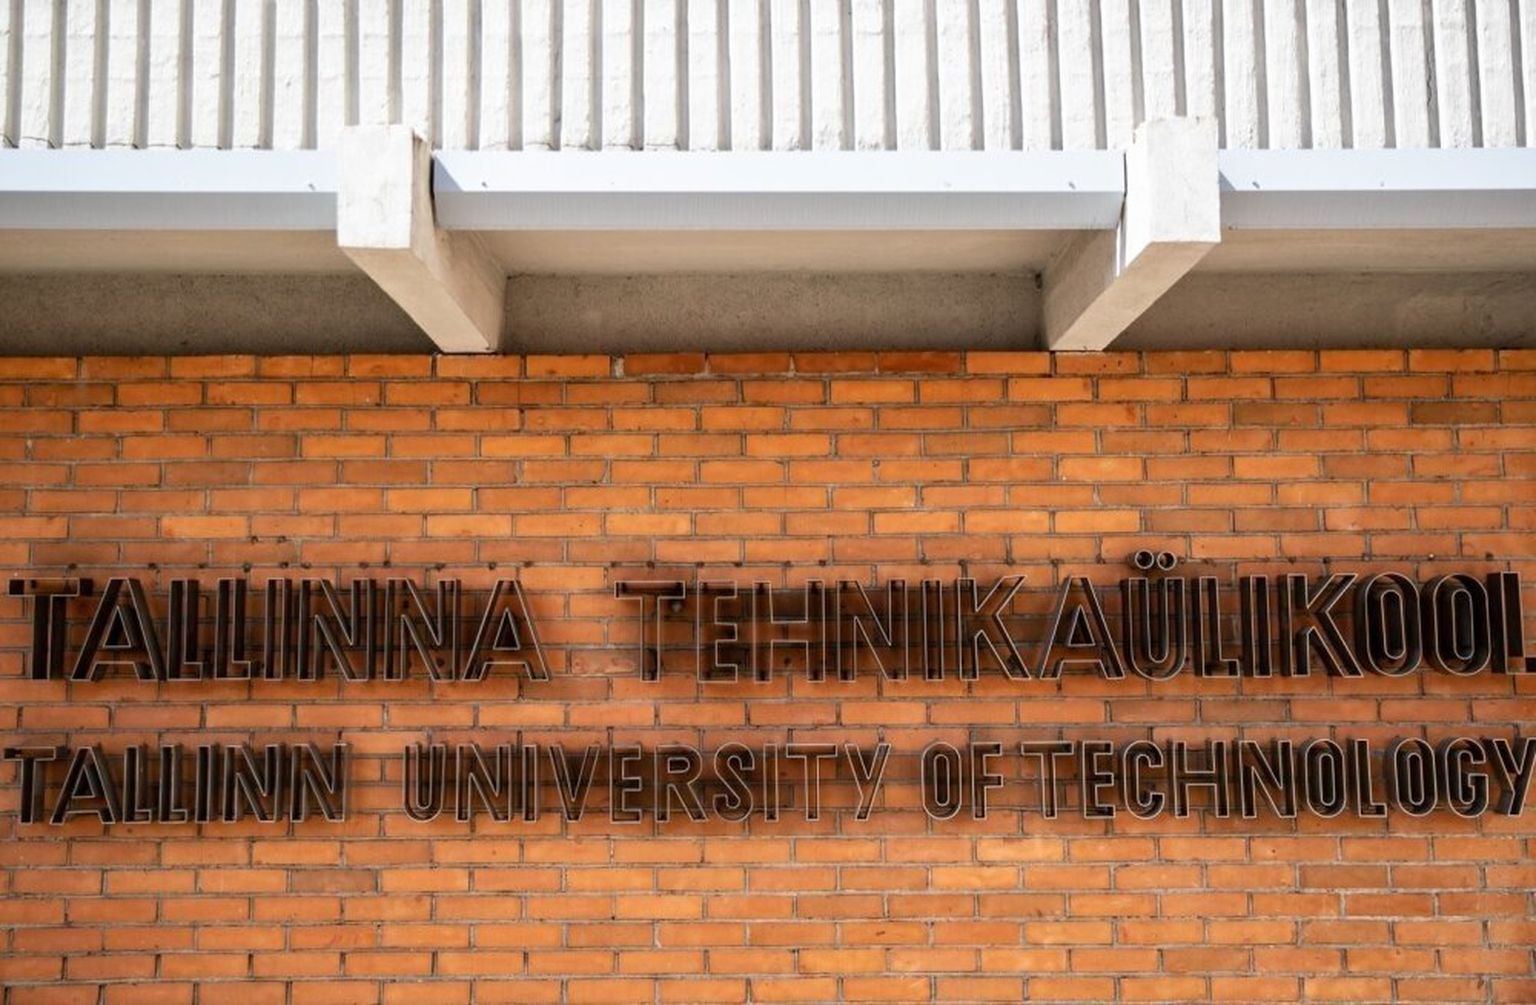 Tallinna tehnikaülikool.